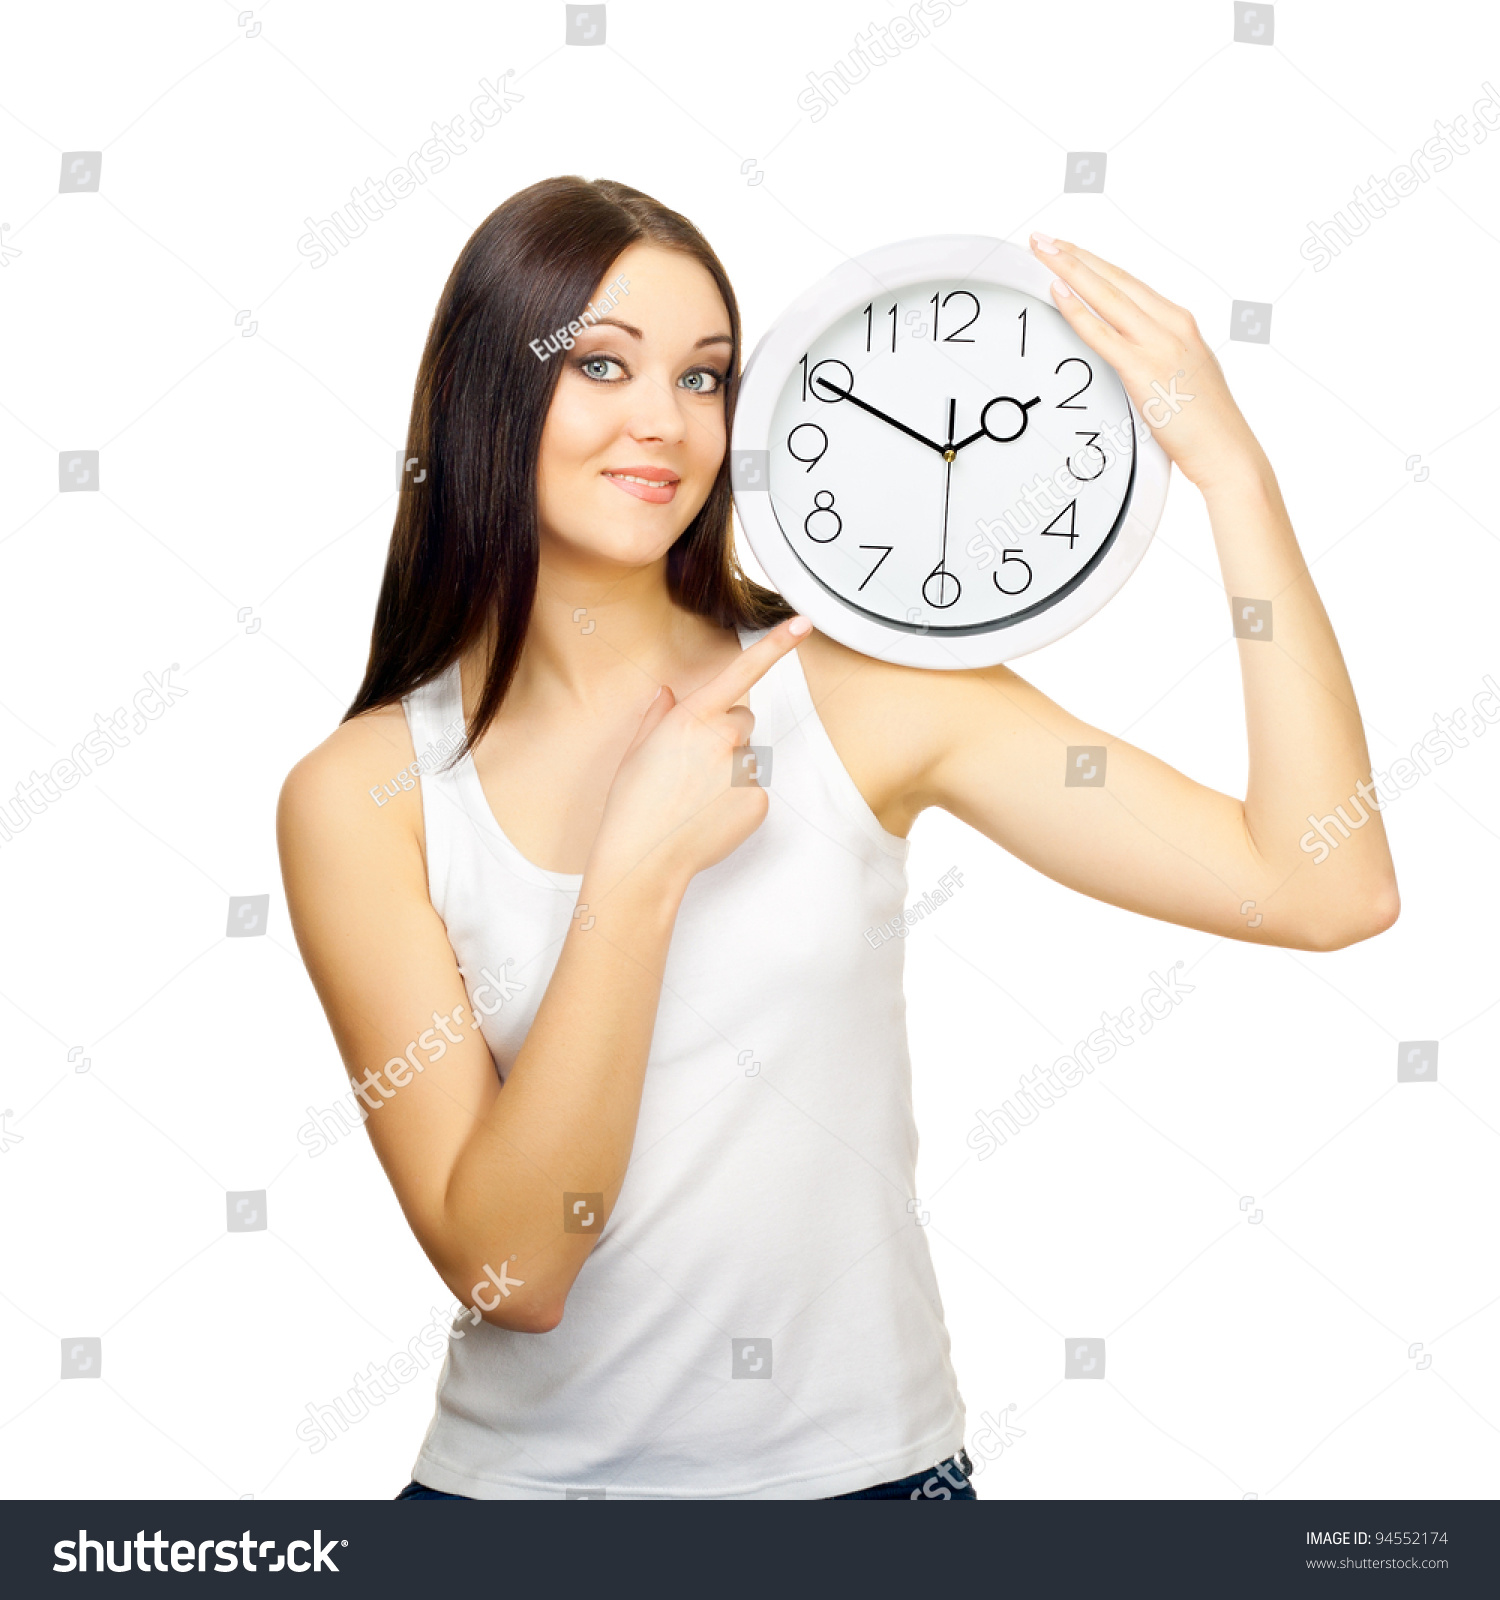 Работа с 9 вечера. Девушка с часами. Девушка указывает на часы. Человек показывает на часы. Девушка держит часы.